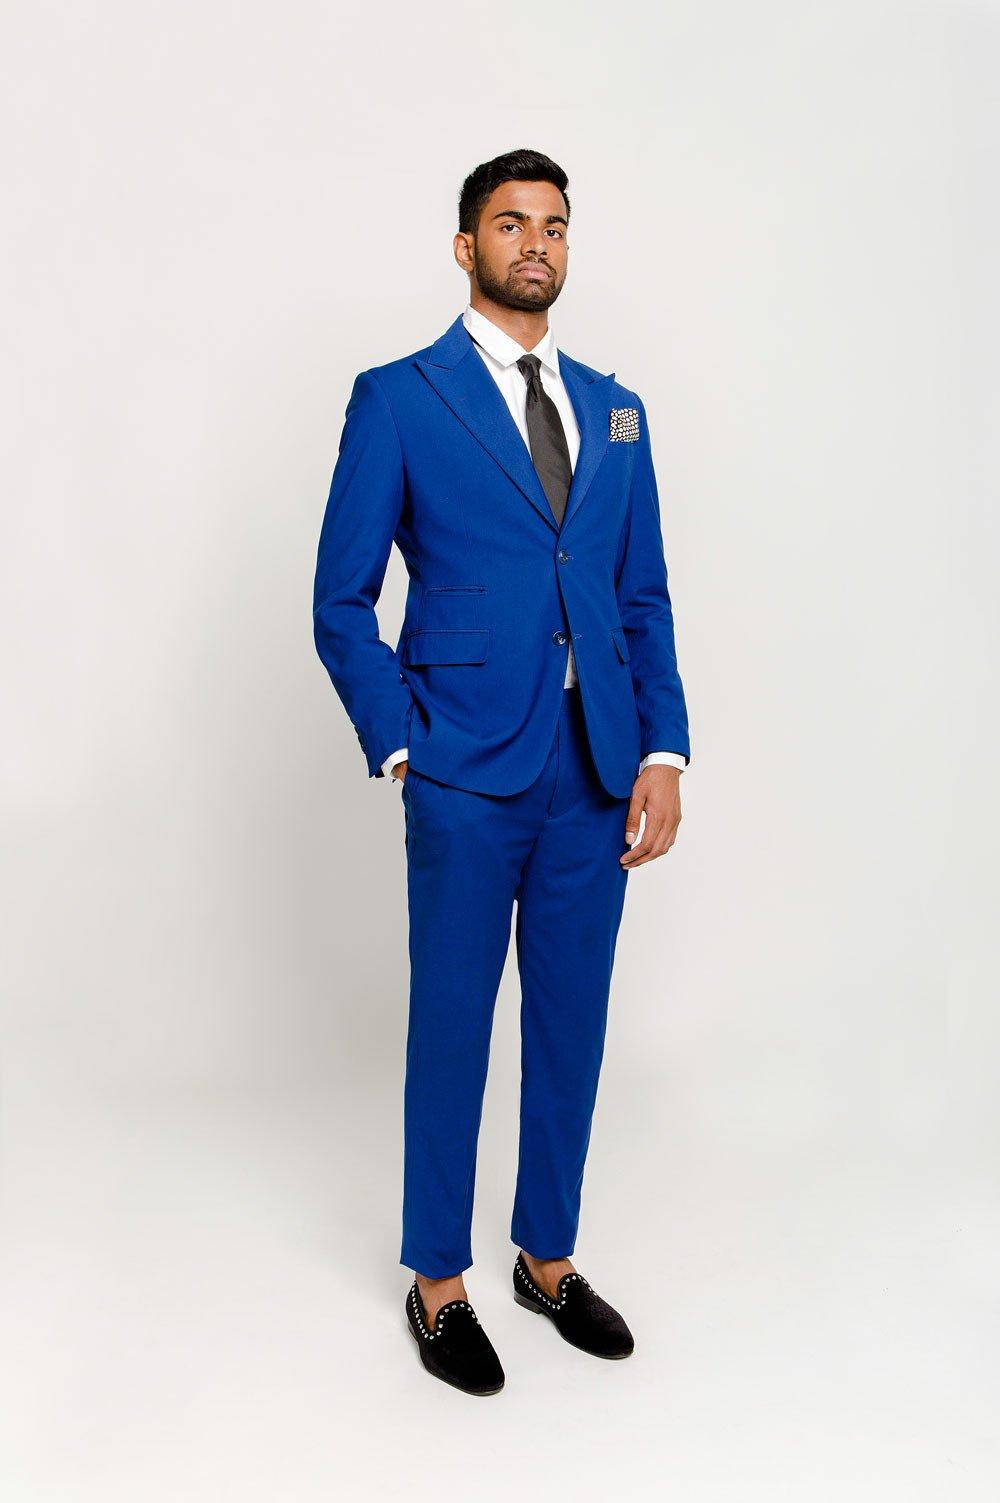 Tipton Blue Suit